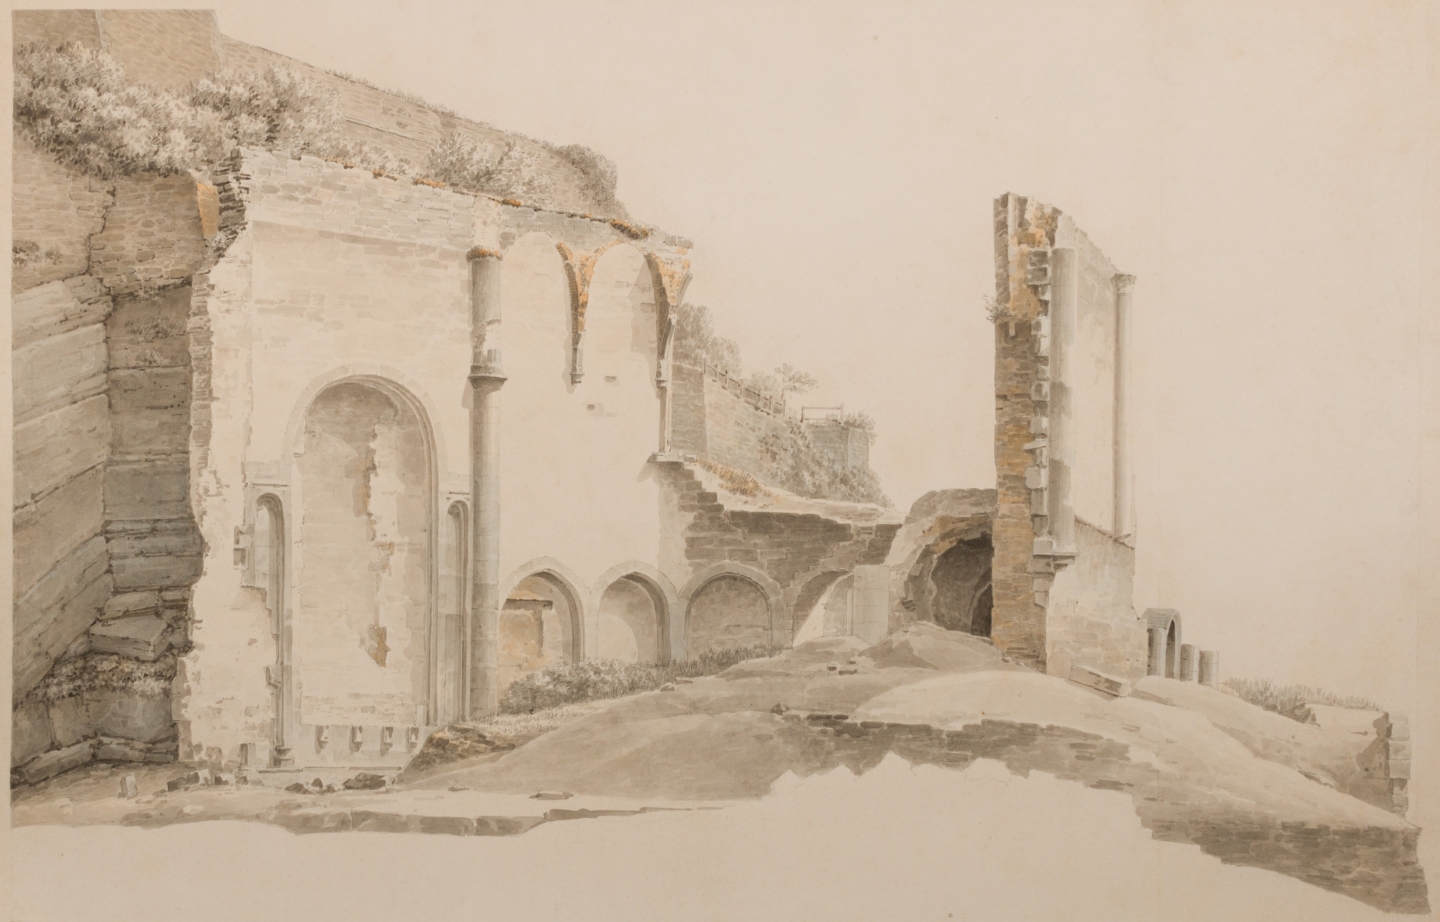 Josephus Augustus Knip (Tilburg 1777-1847 Berlicum) Ruins of a monastery nearby Namur (ca. 1809)